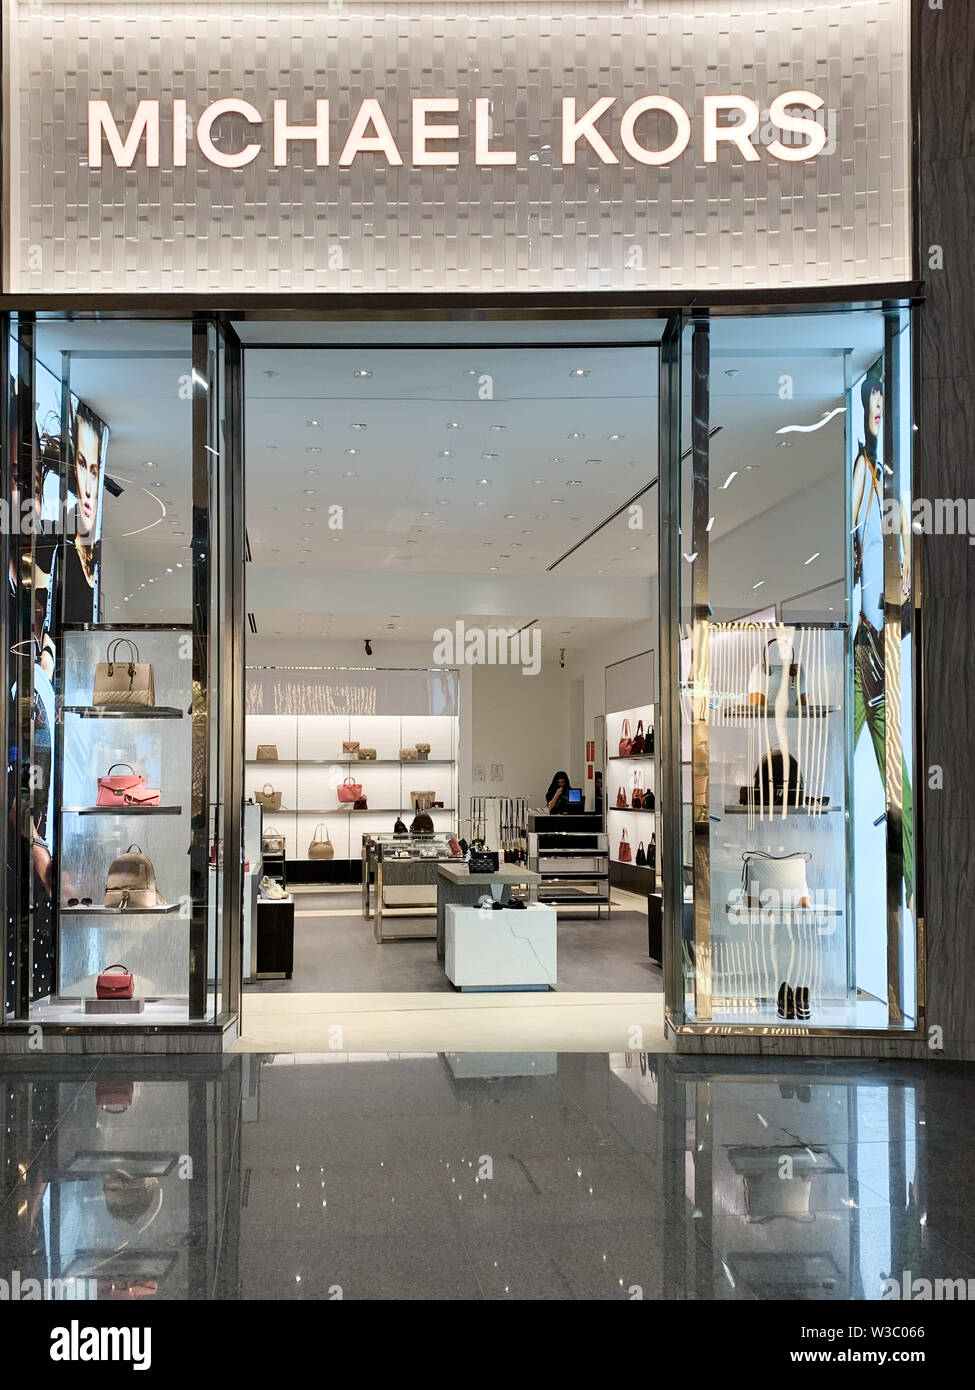 Marque de mode américain appelé Michael Kors avec sa devanture de magasin,  la vente d'articles de luxe et des sacs à main. Istanbul/Turquie - Avril  2019 Photo Stock - Alamy